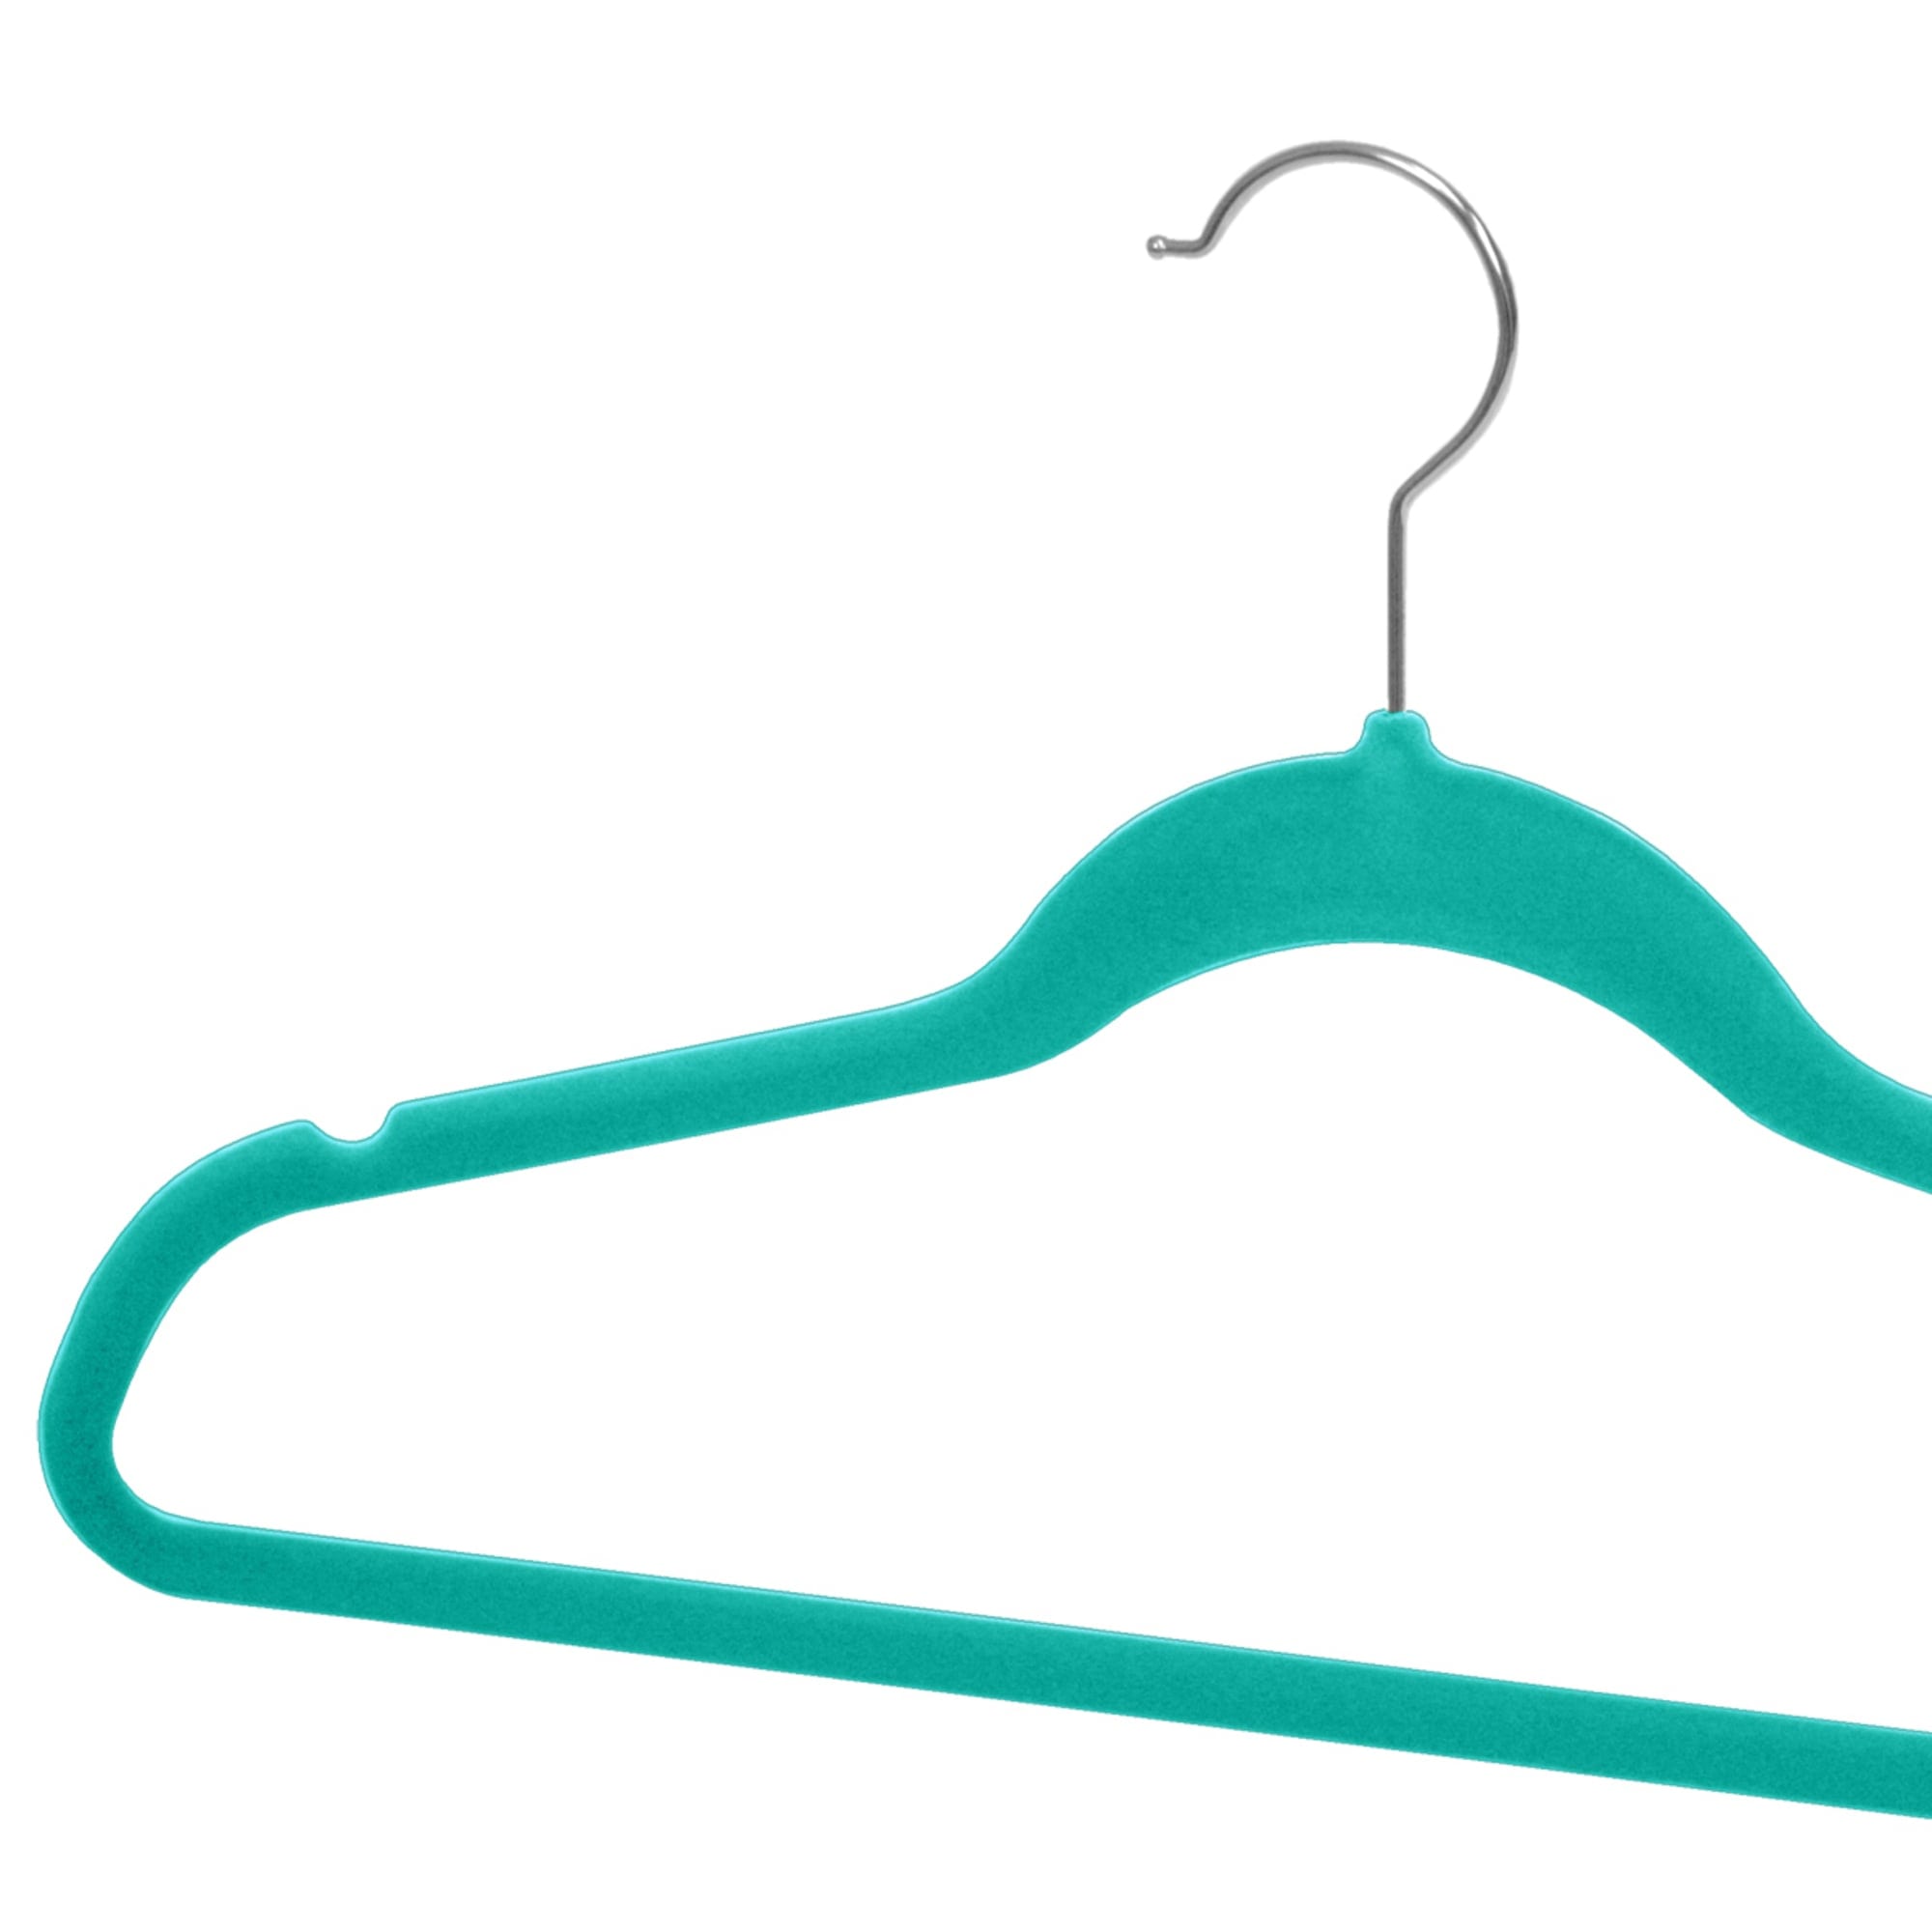 Home Basics 10-Piece Velvet Hanger, Turquoise $4.00 EACH, CASE PACK OF 12